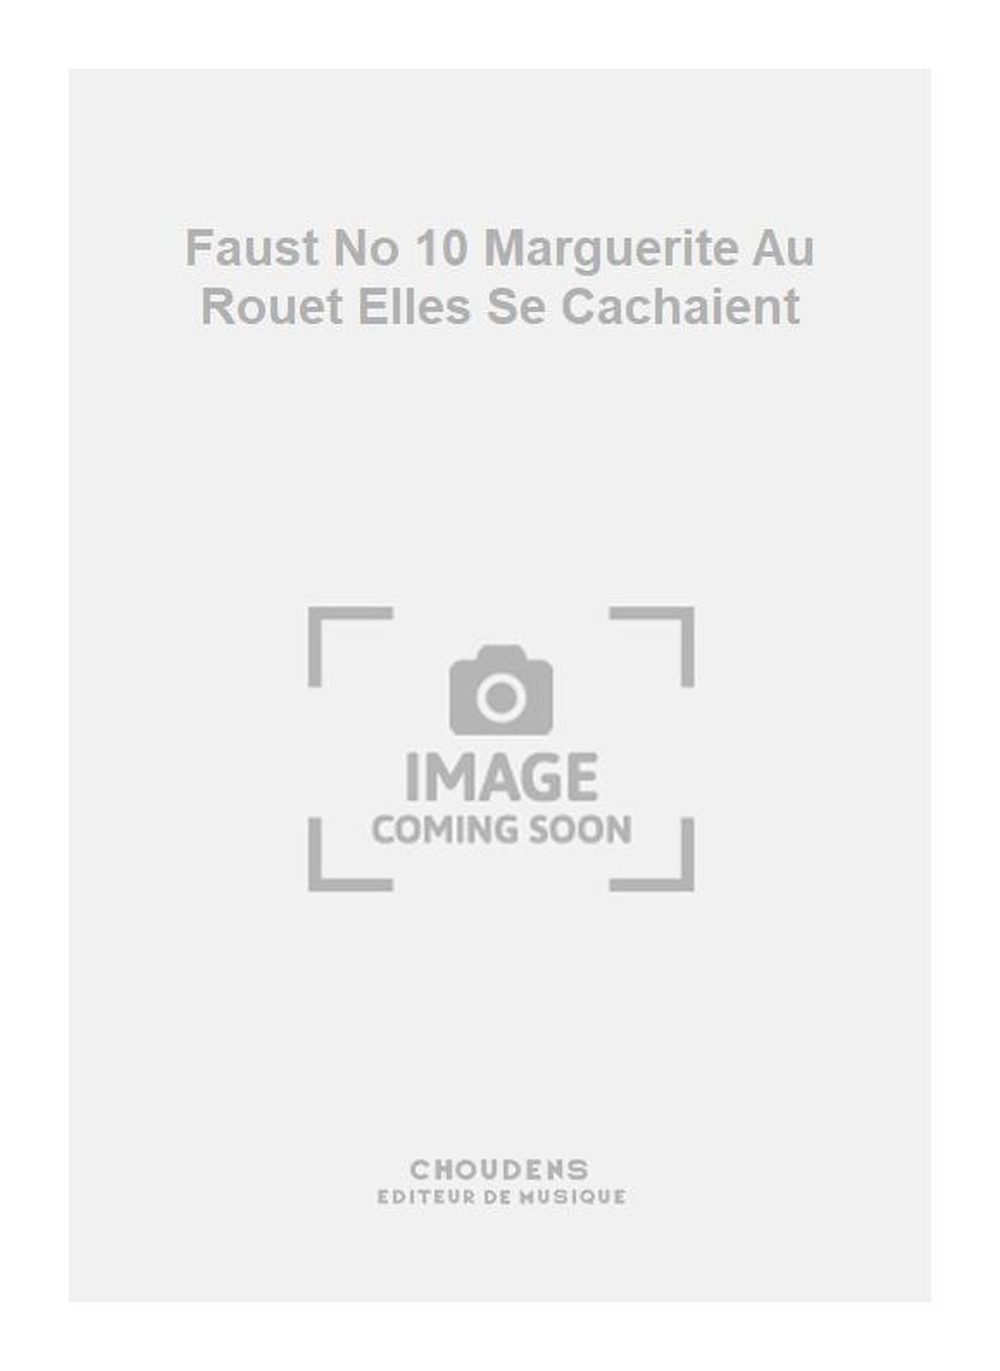 Charles Gounod: Faust No 10 Marguerite Au Rouet Elles Se Cachaient